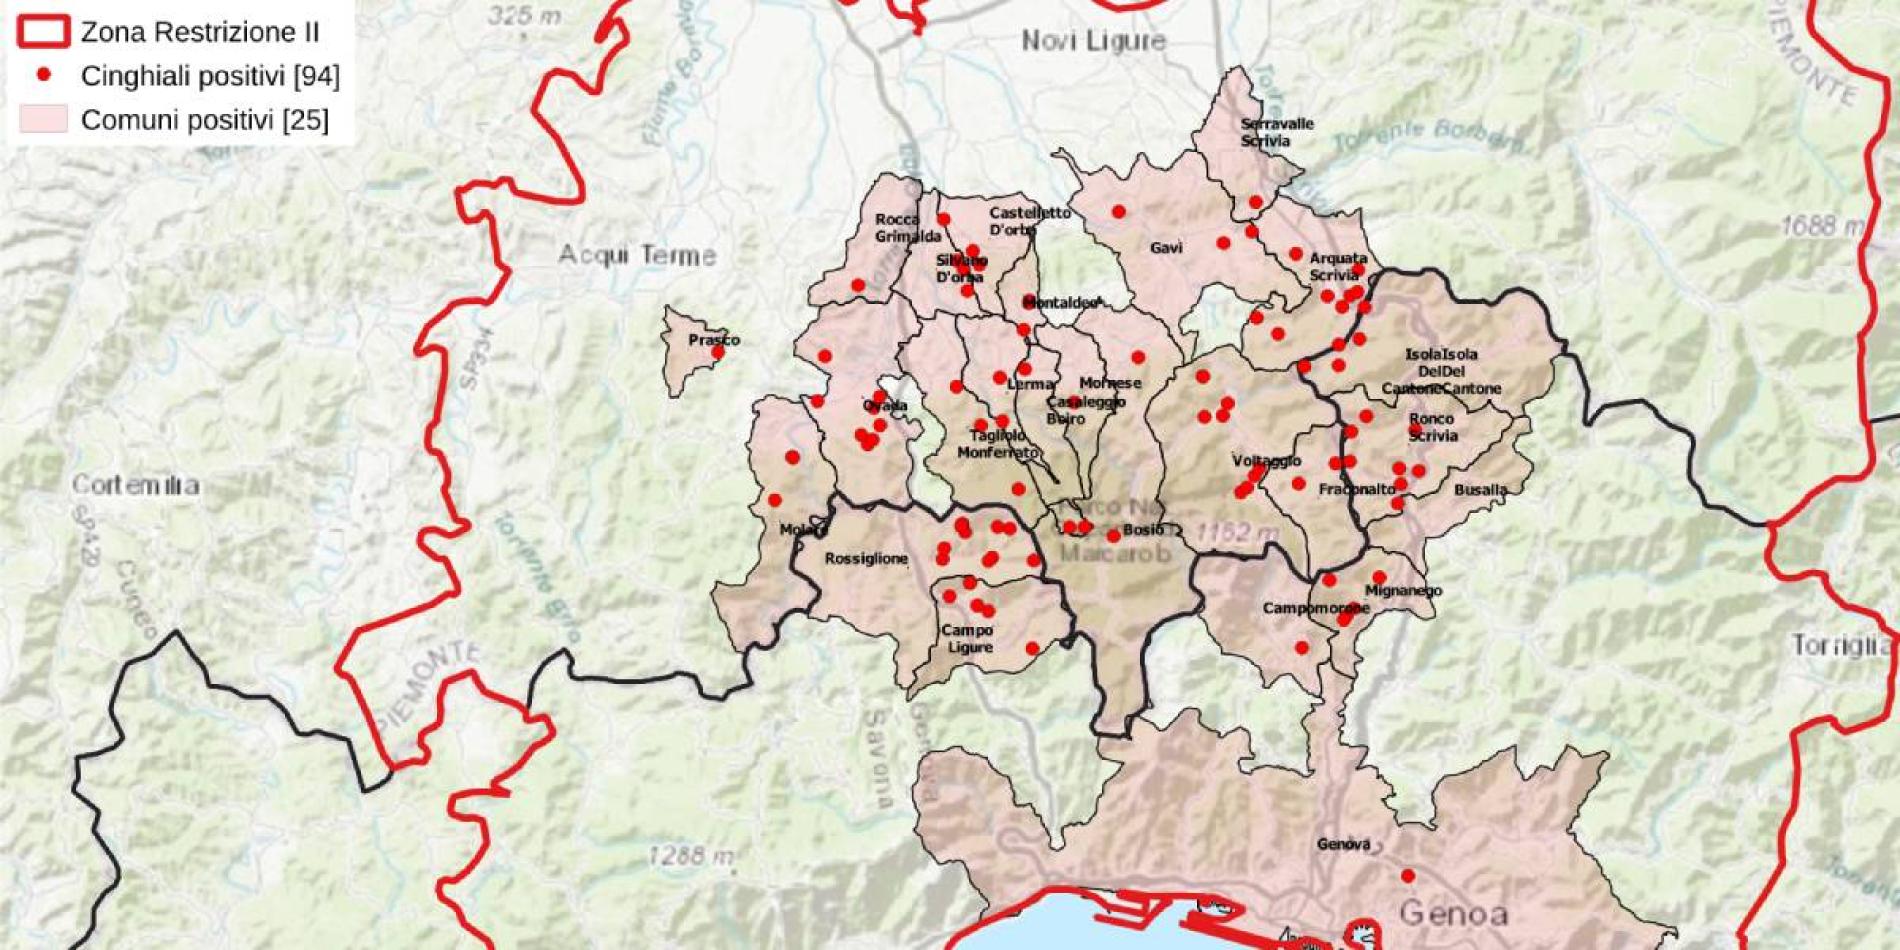 Peste suina, la Regione anticipa 8 milioni per la maxi recinzione